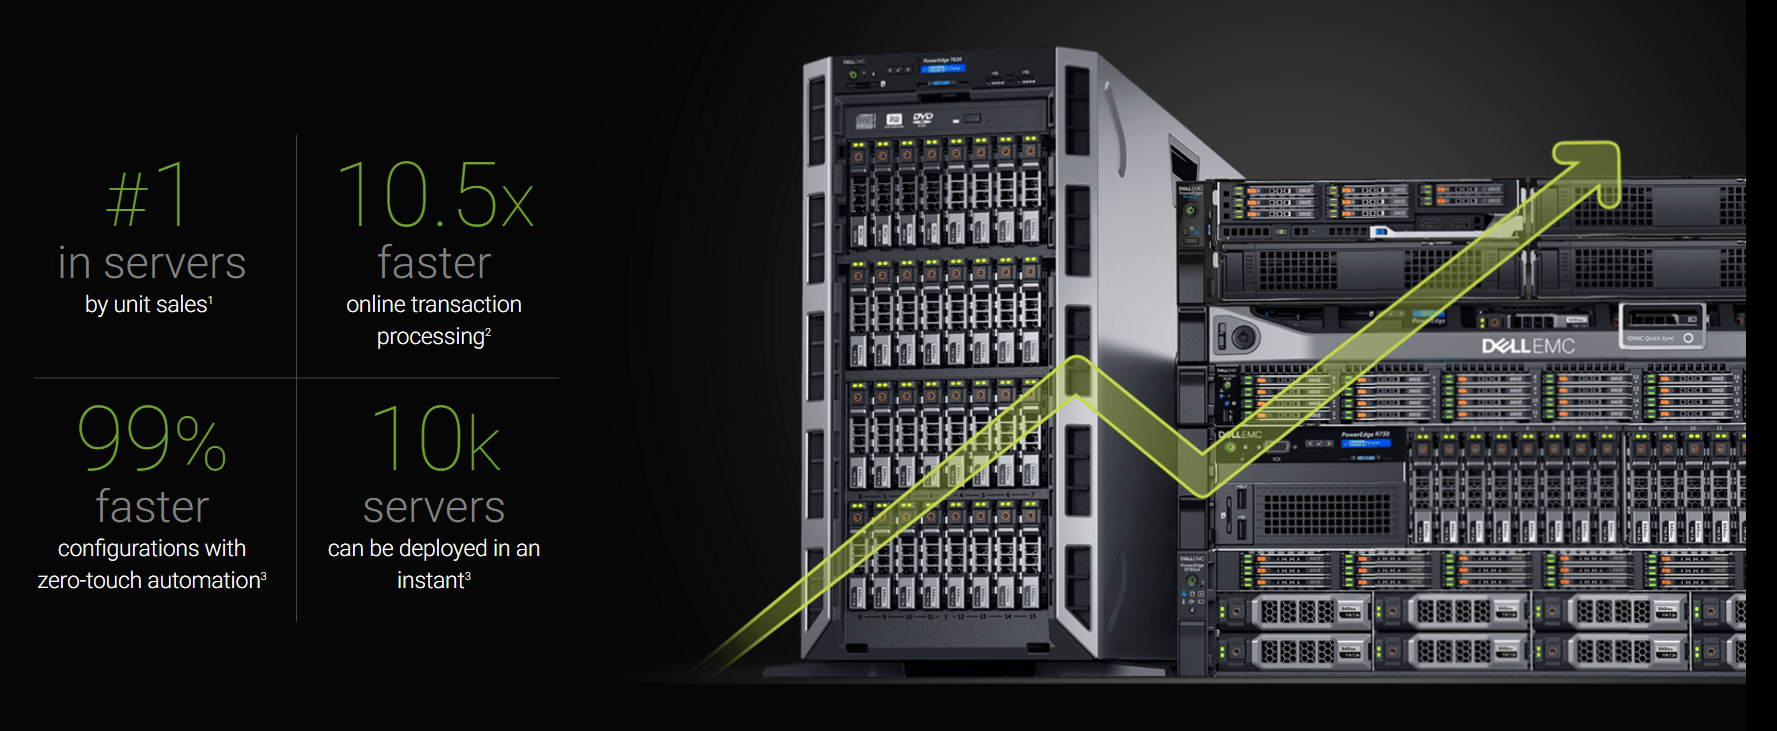 Размеры серверов rack 1u 2u rackmount tower Dell - конфигуратор решениий  серверное оборудование подбор решения купить любой конфигурации параметры и стоимость выбор по цене и расчет